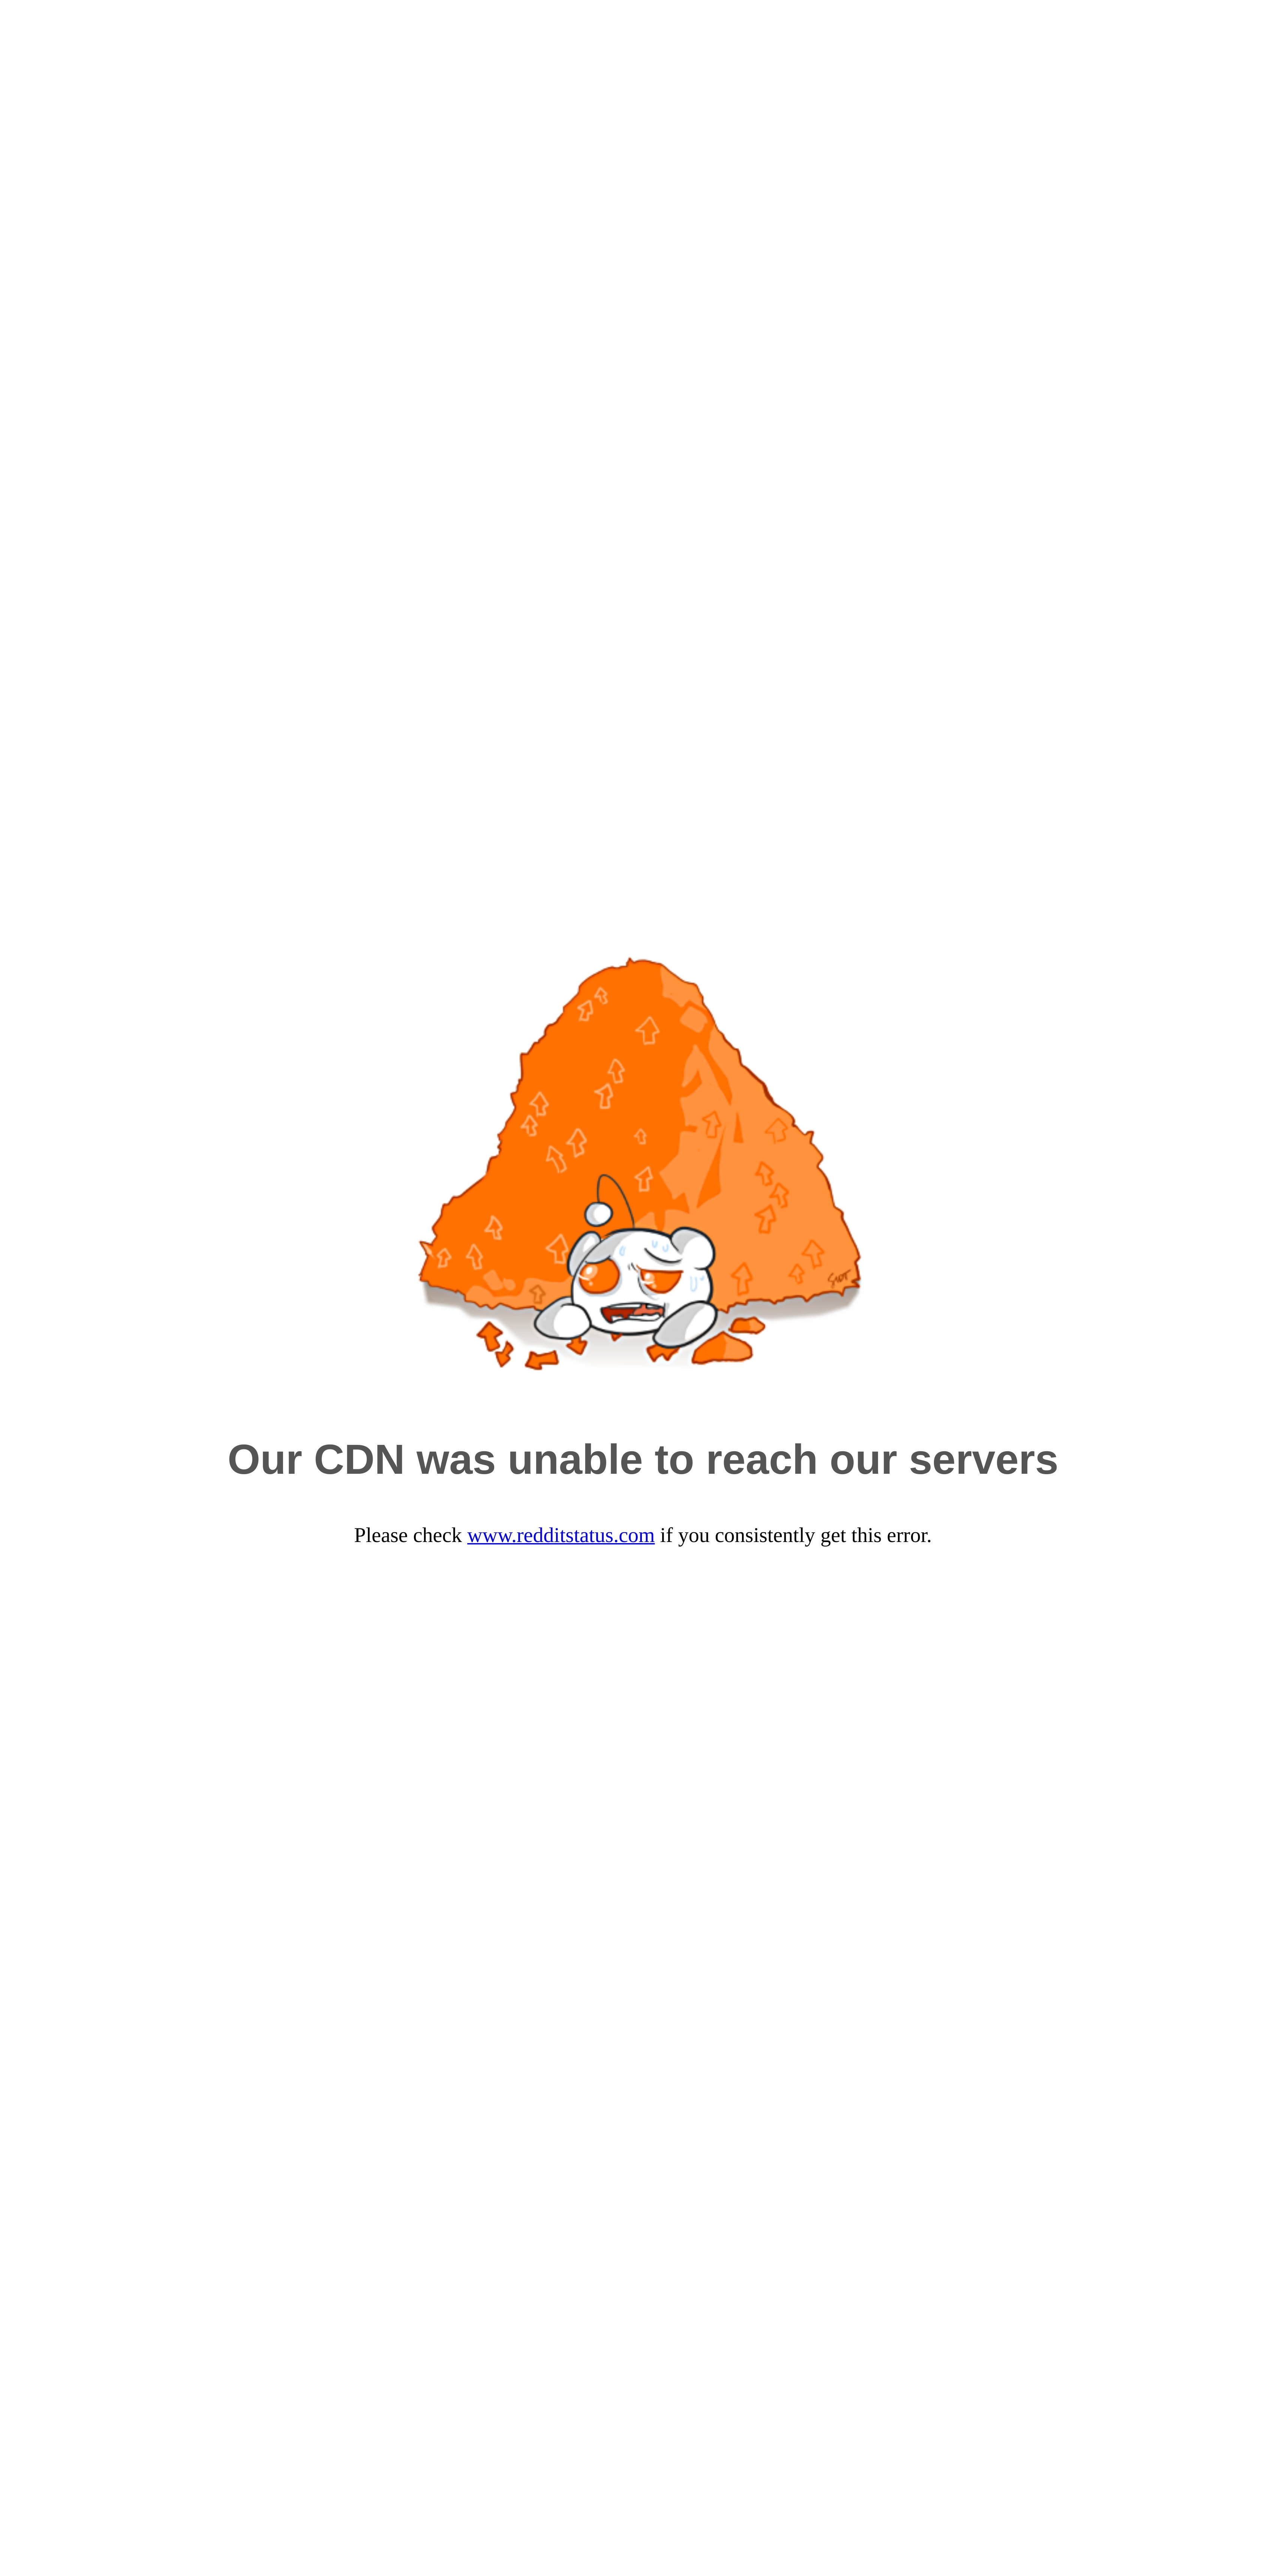 Reddit Announces Blocking Updates